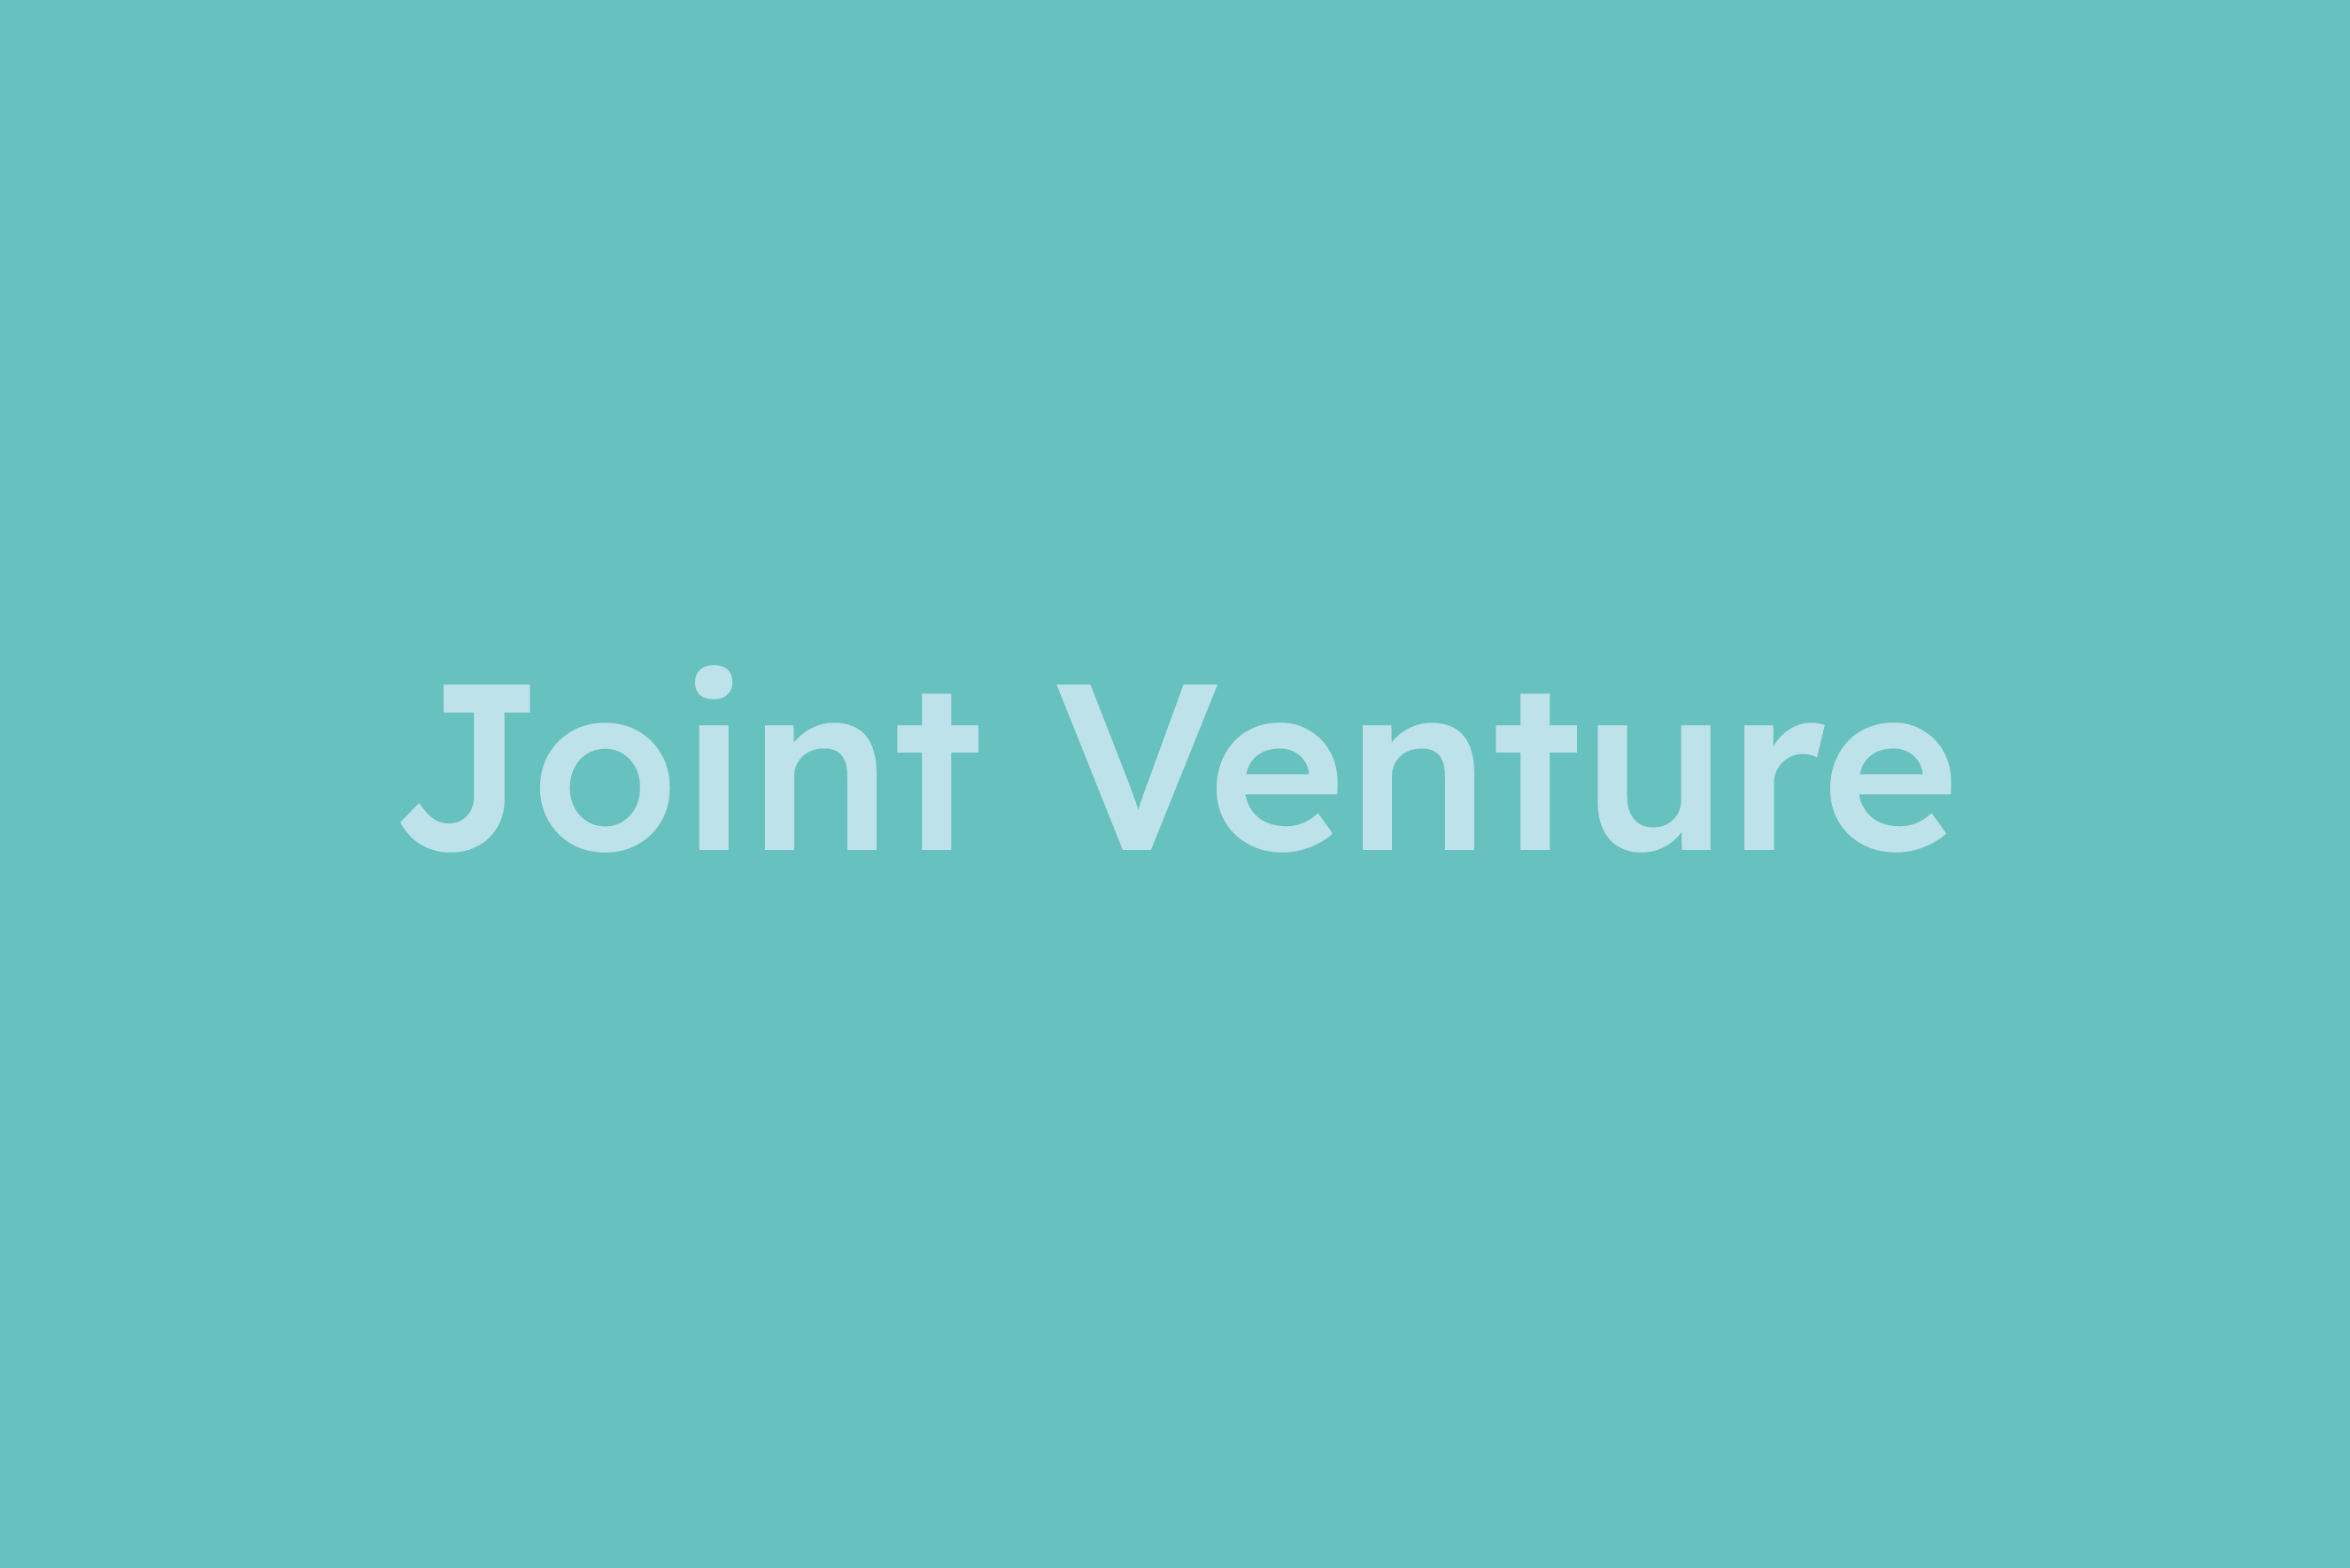 Joint Venture erklärt im Glossar von Campaign